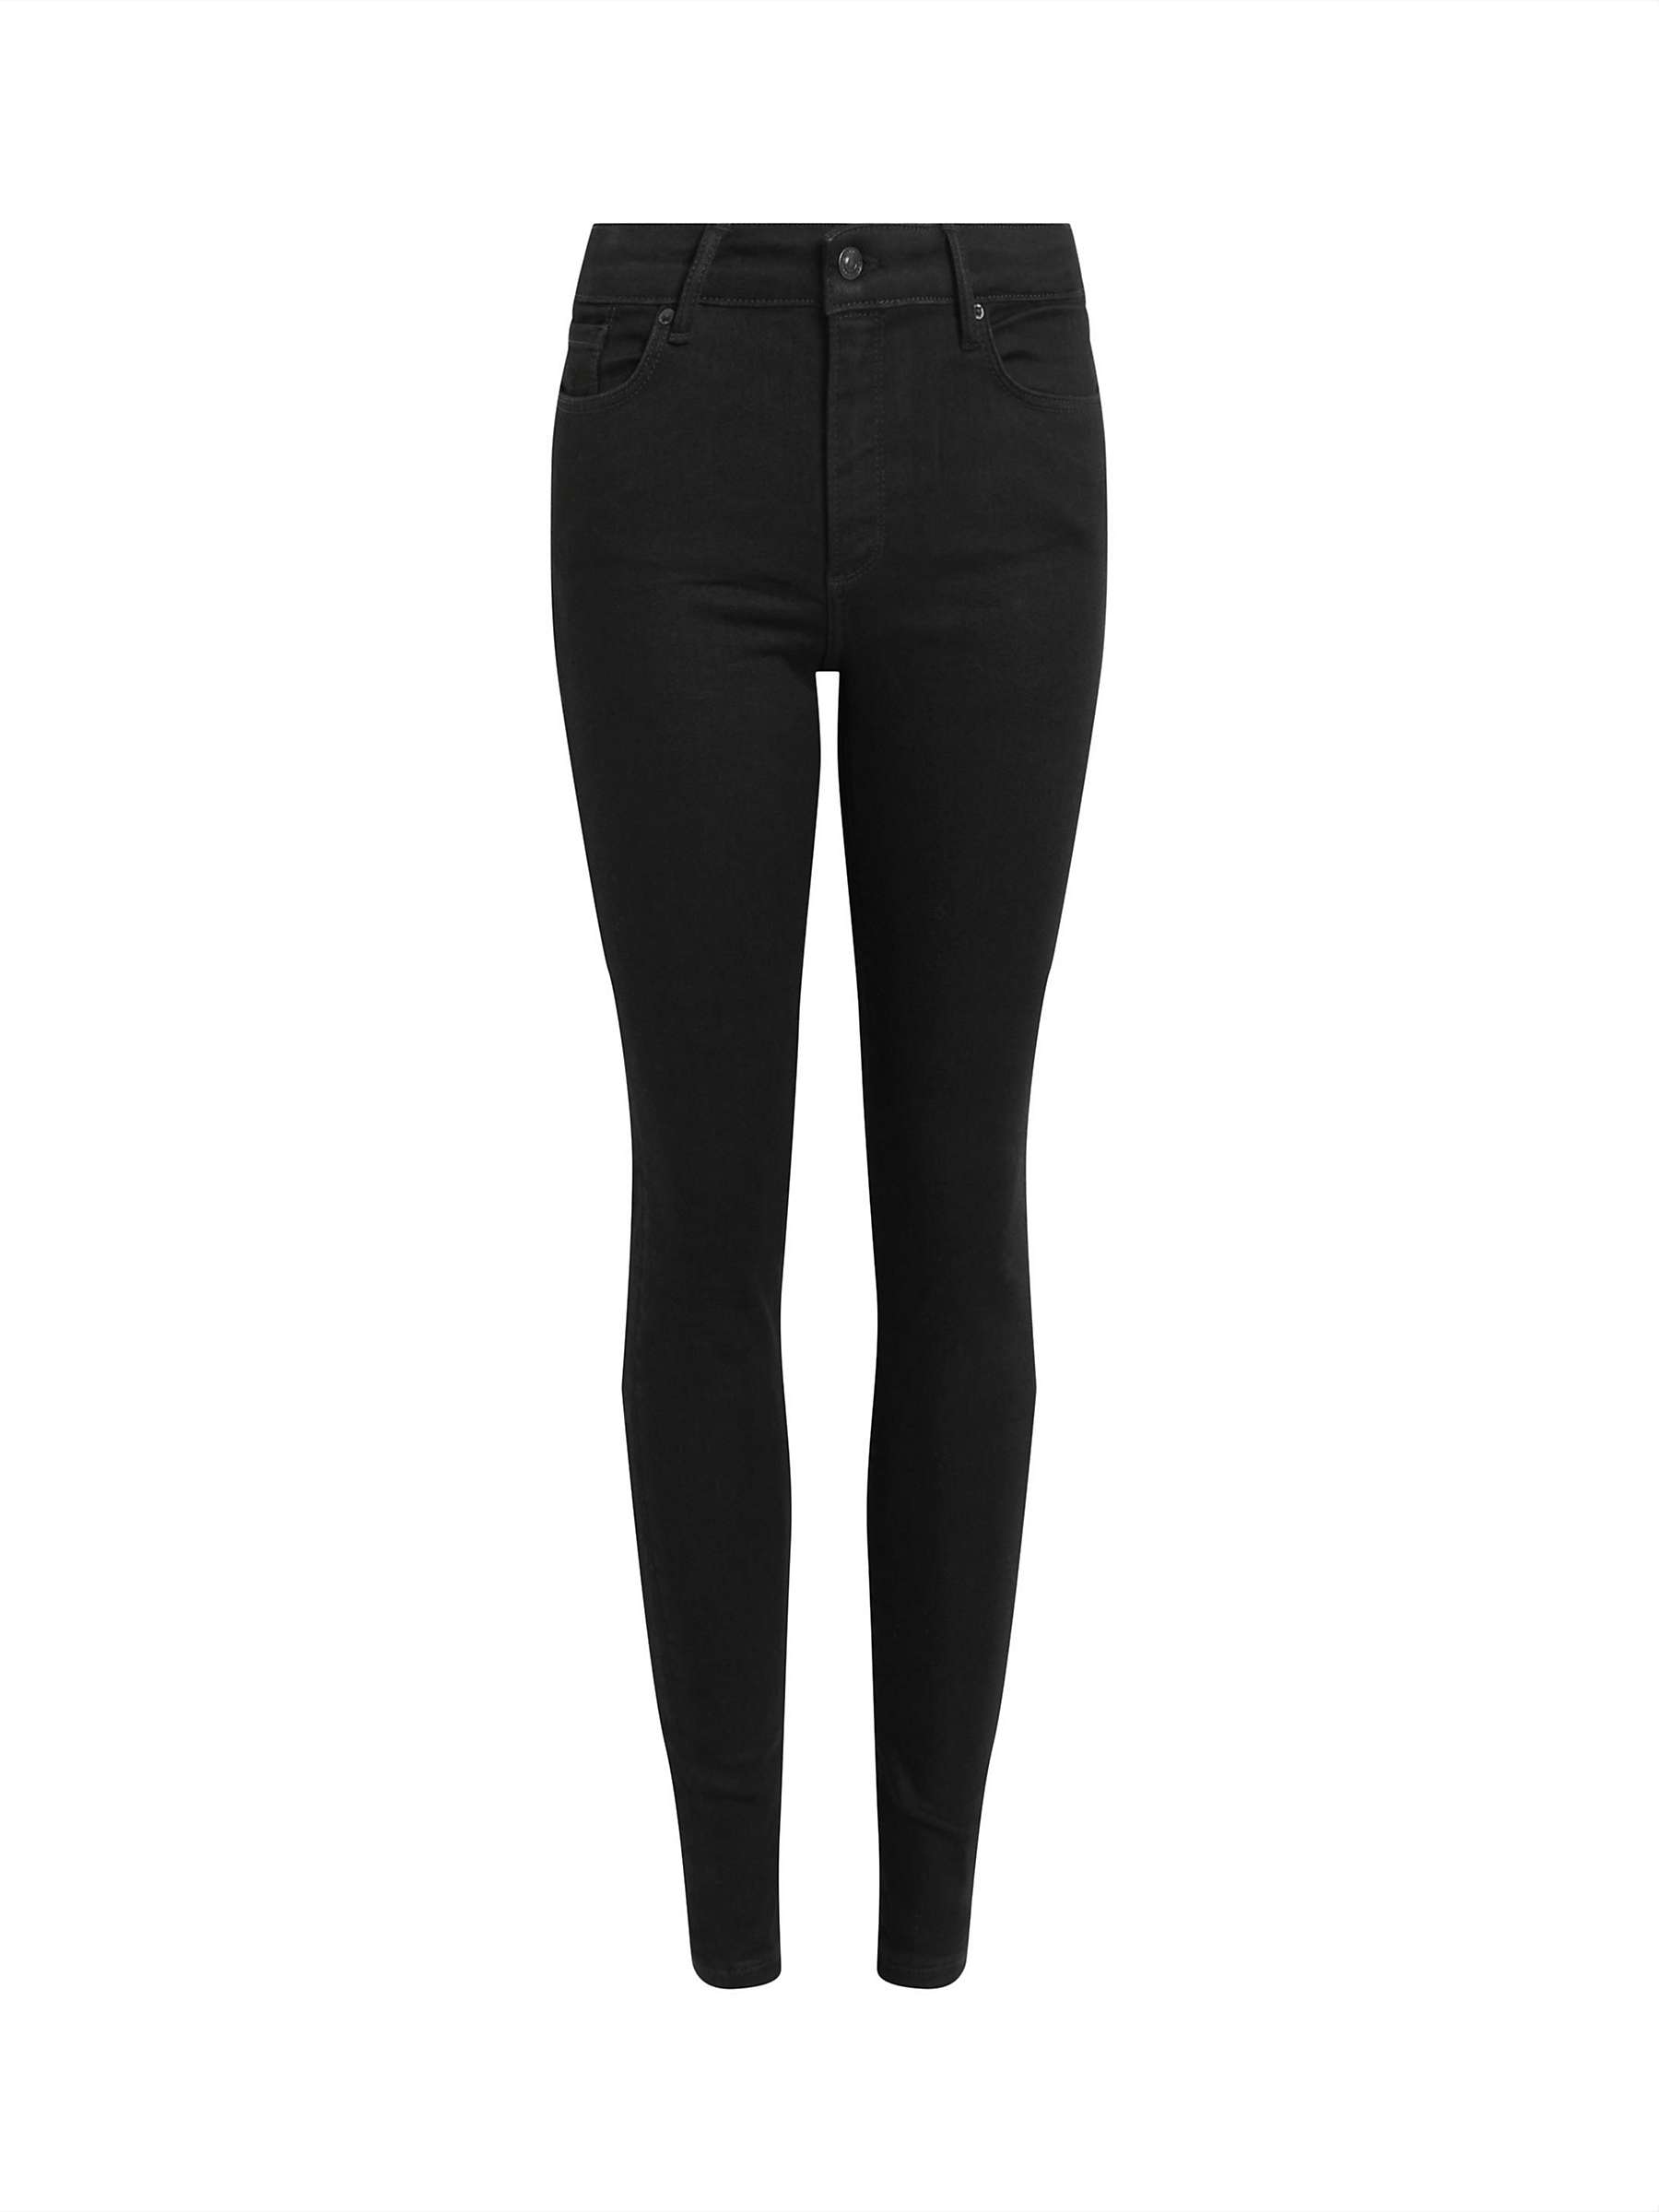 Buy AllSaints Miller Sizeme Skinny Jeans, Black Online at johnlewis.com